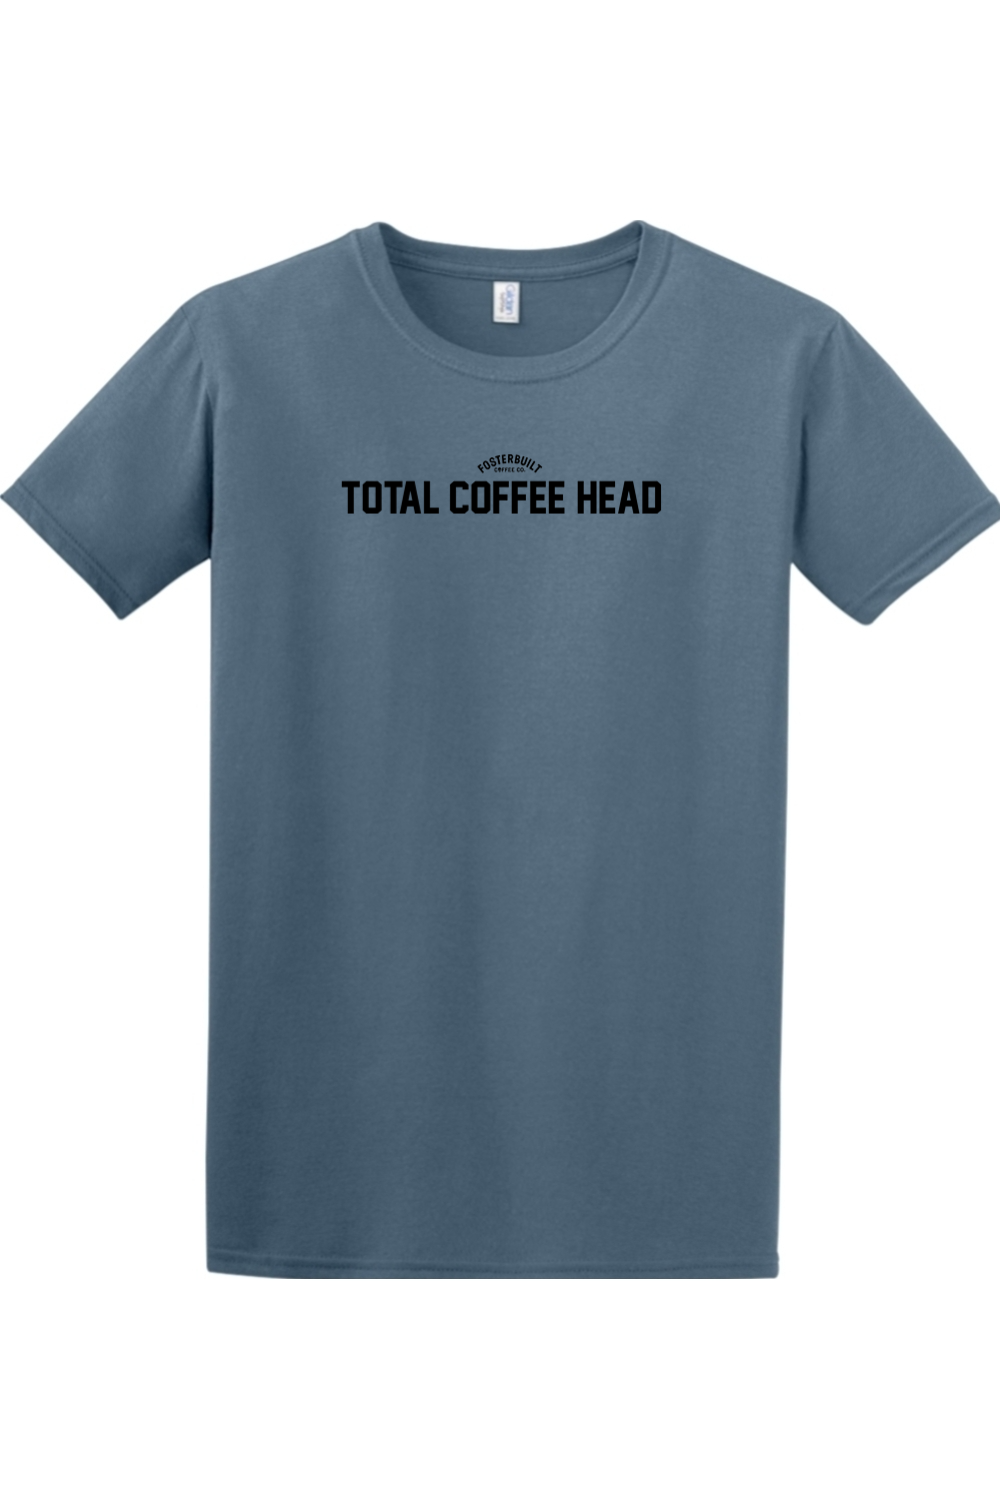 TOTAL COFFEE HEAD - Mens T-Shirt